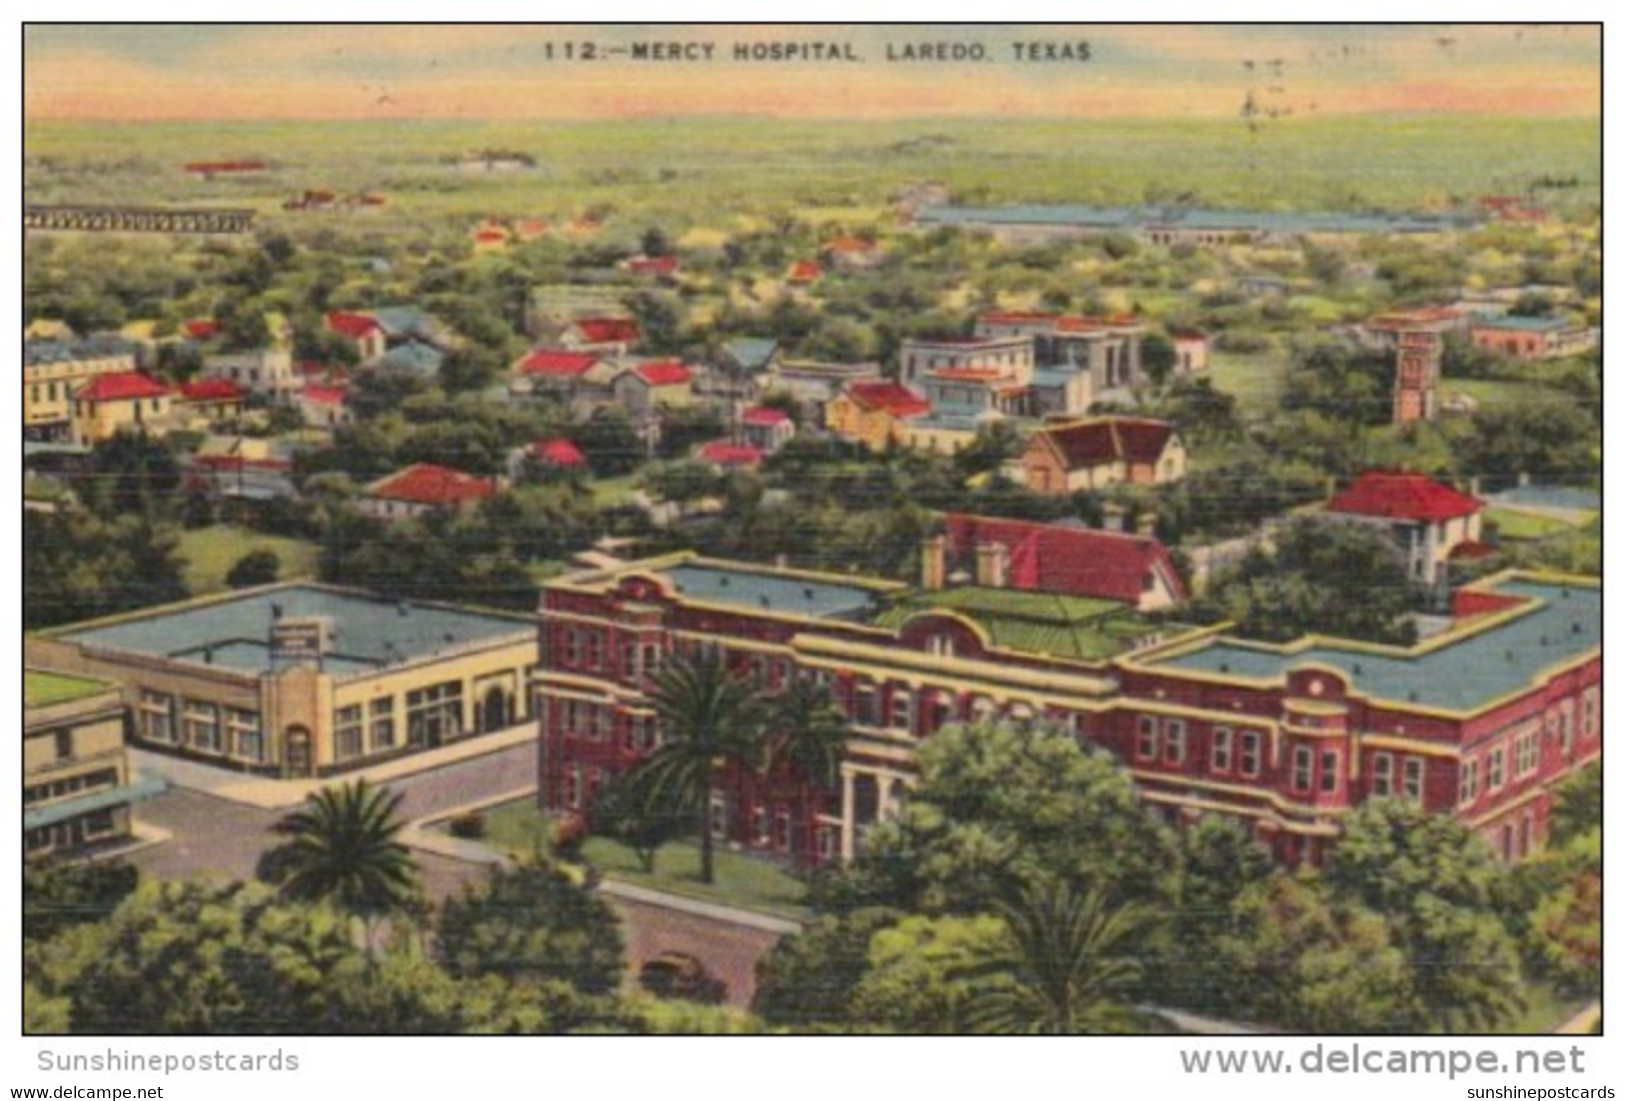 Texas Laredo Mercy Hospital - Laredo